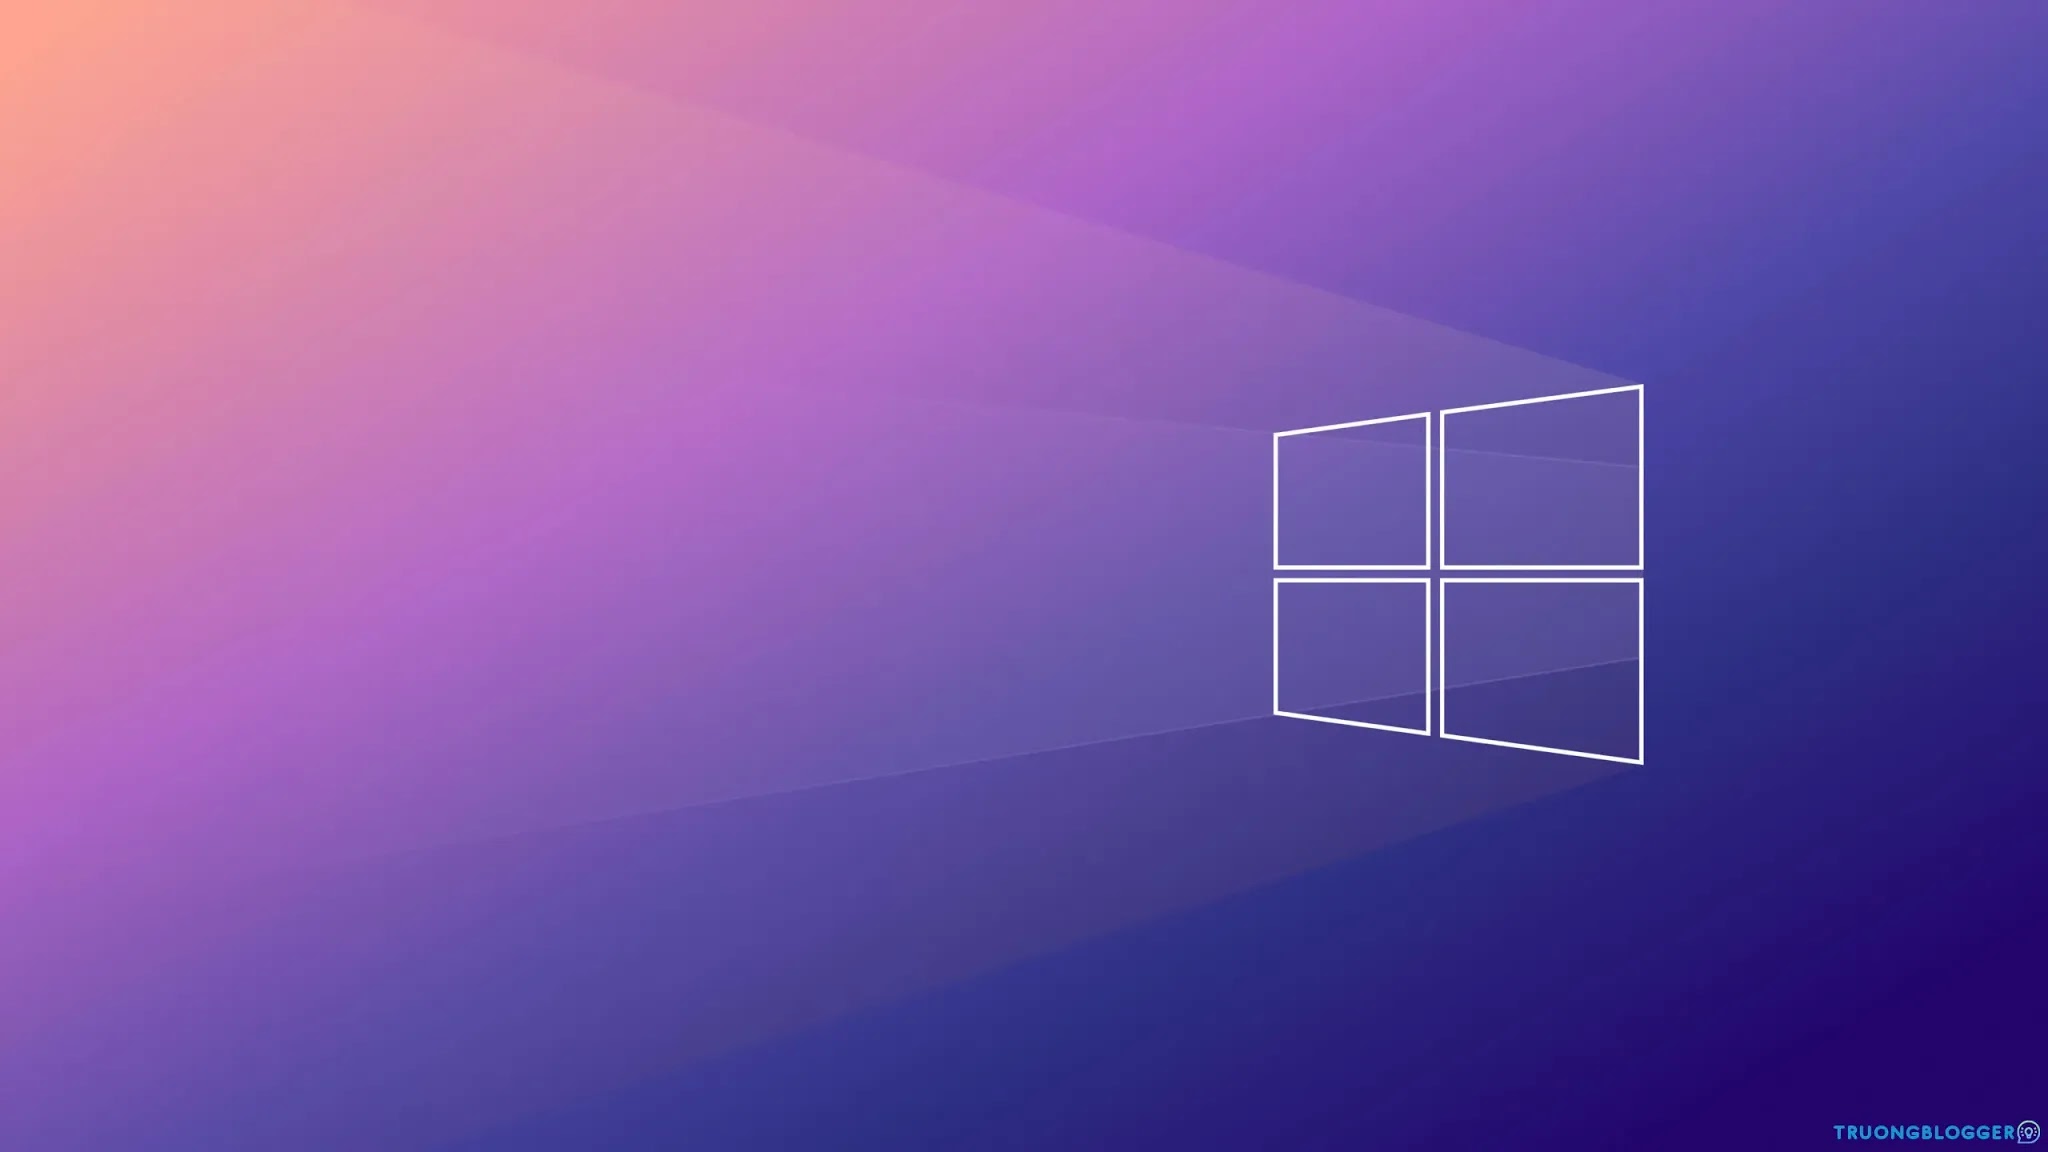 Chia sẻ Ghost Windows 10 LTSC (x64 + x86) - No Soft & Full Soft Chuẩn MBR - UEFI mượt nhẹ, ổn định